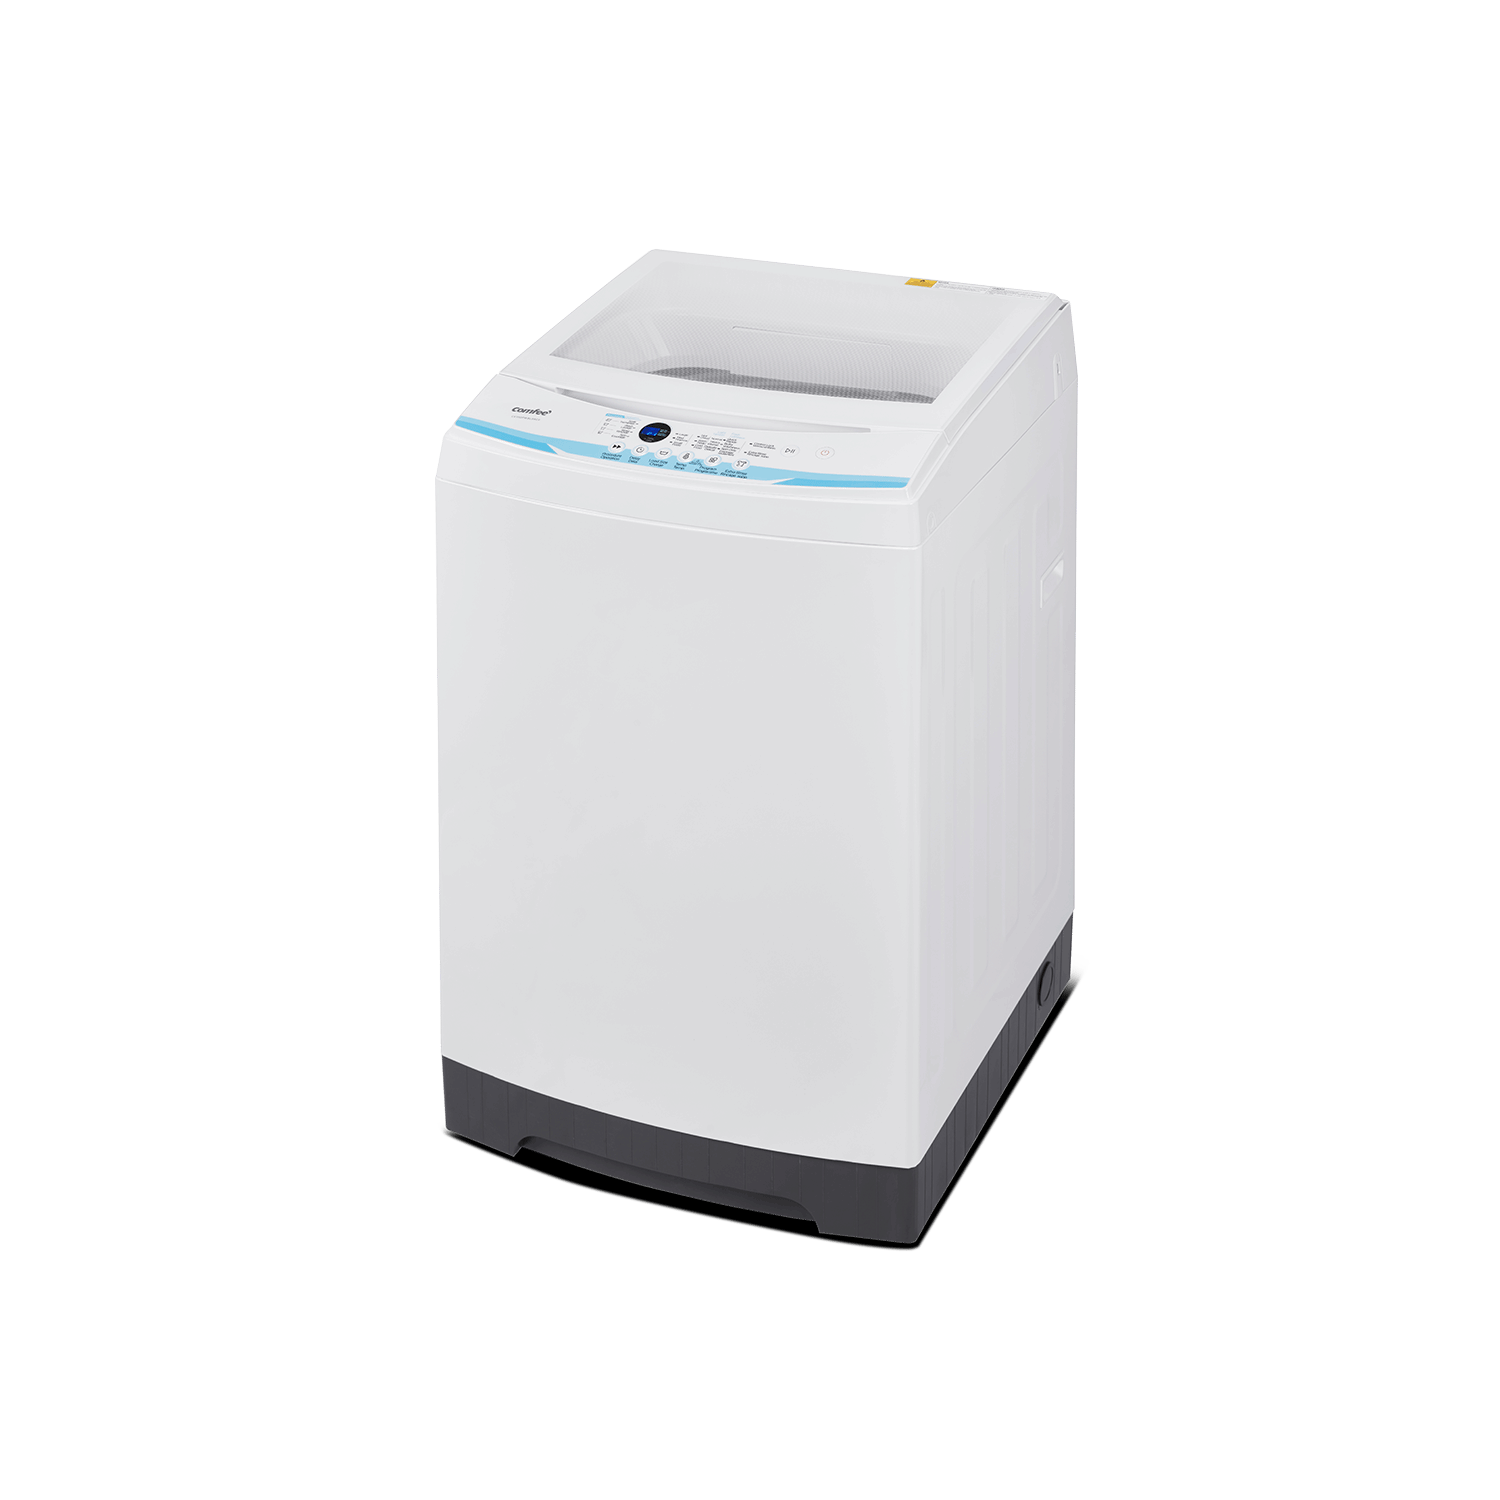 Laveuse portative compacte GE, chargement vertical, 2,8 pi³, blanc